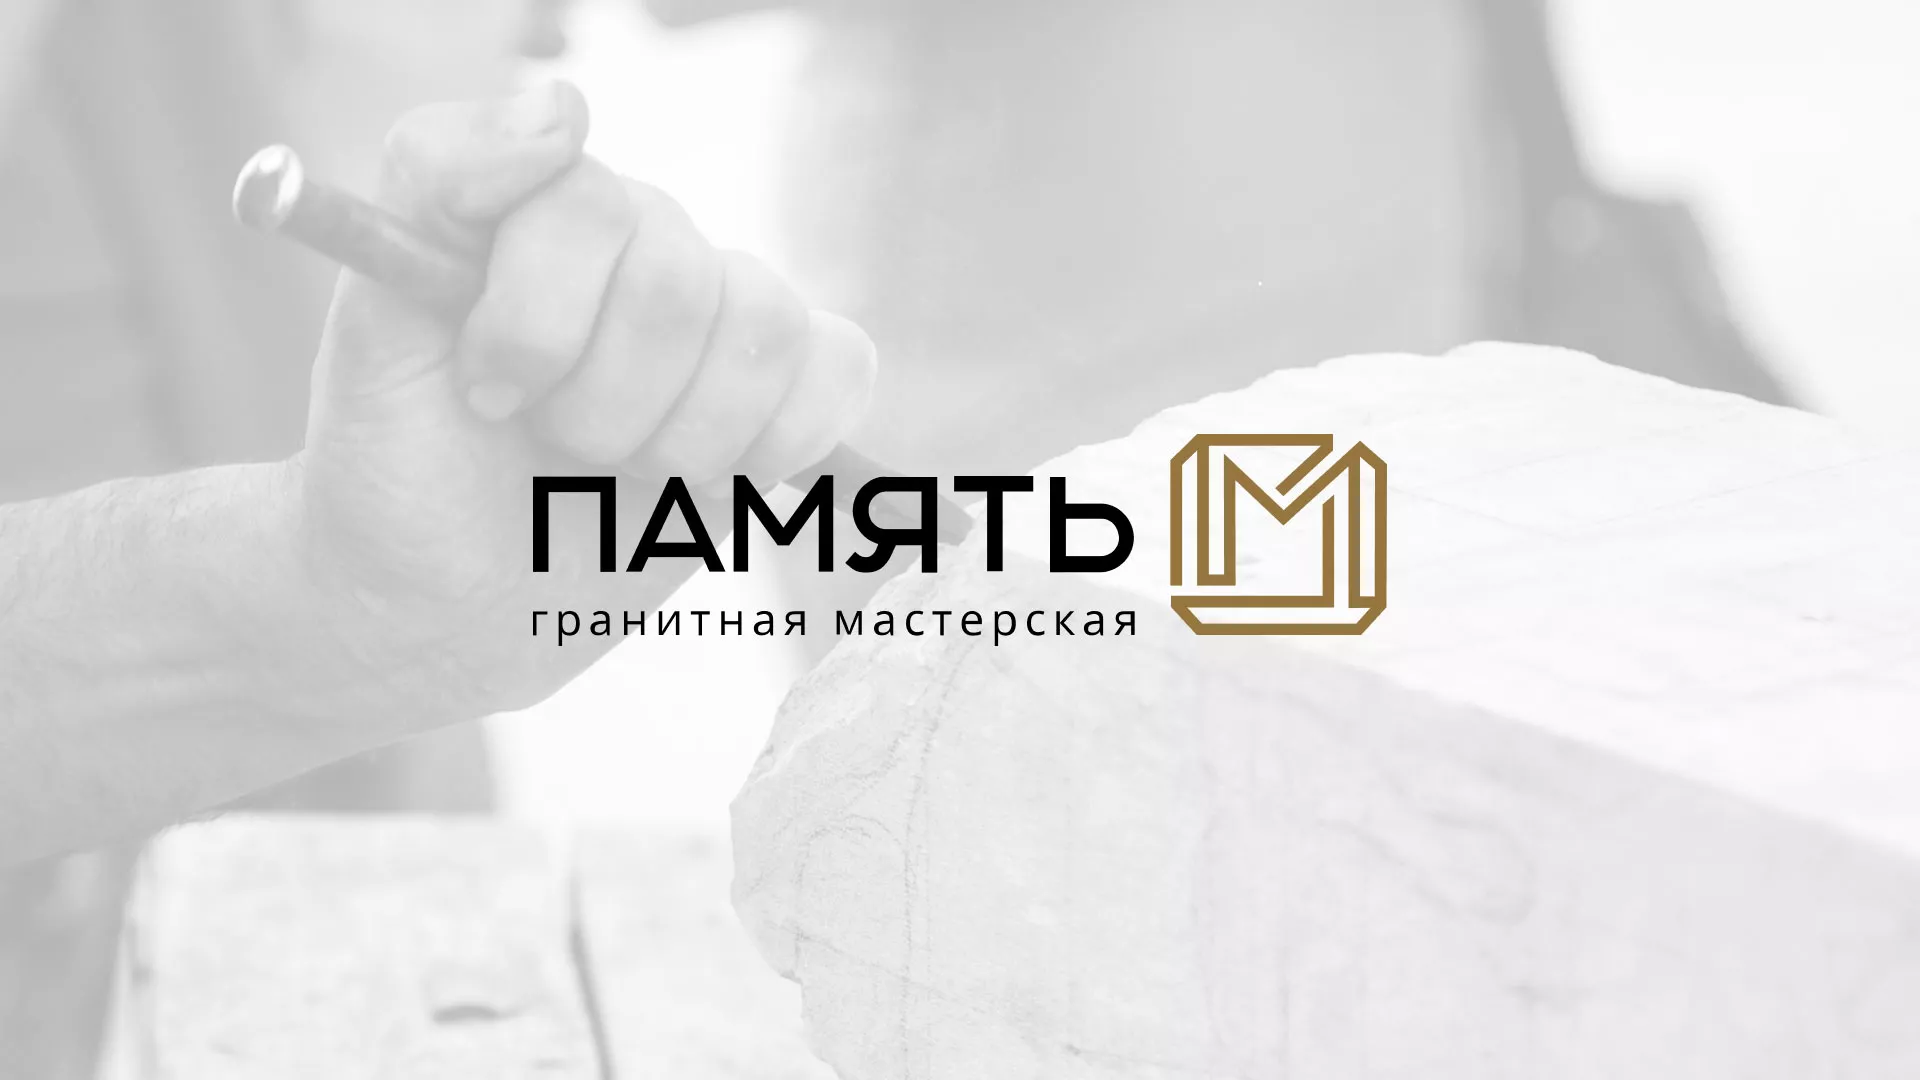 Разработка логотипа и сайта компании «Память-М» в Юрьев-Польском